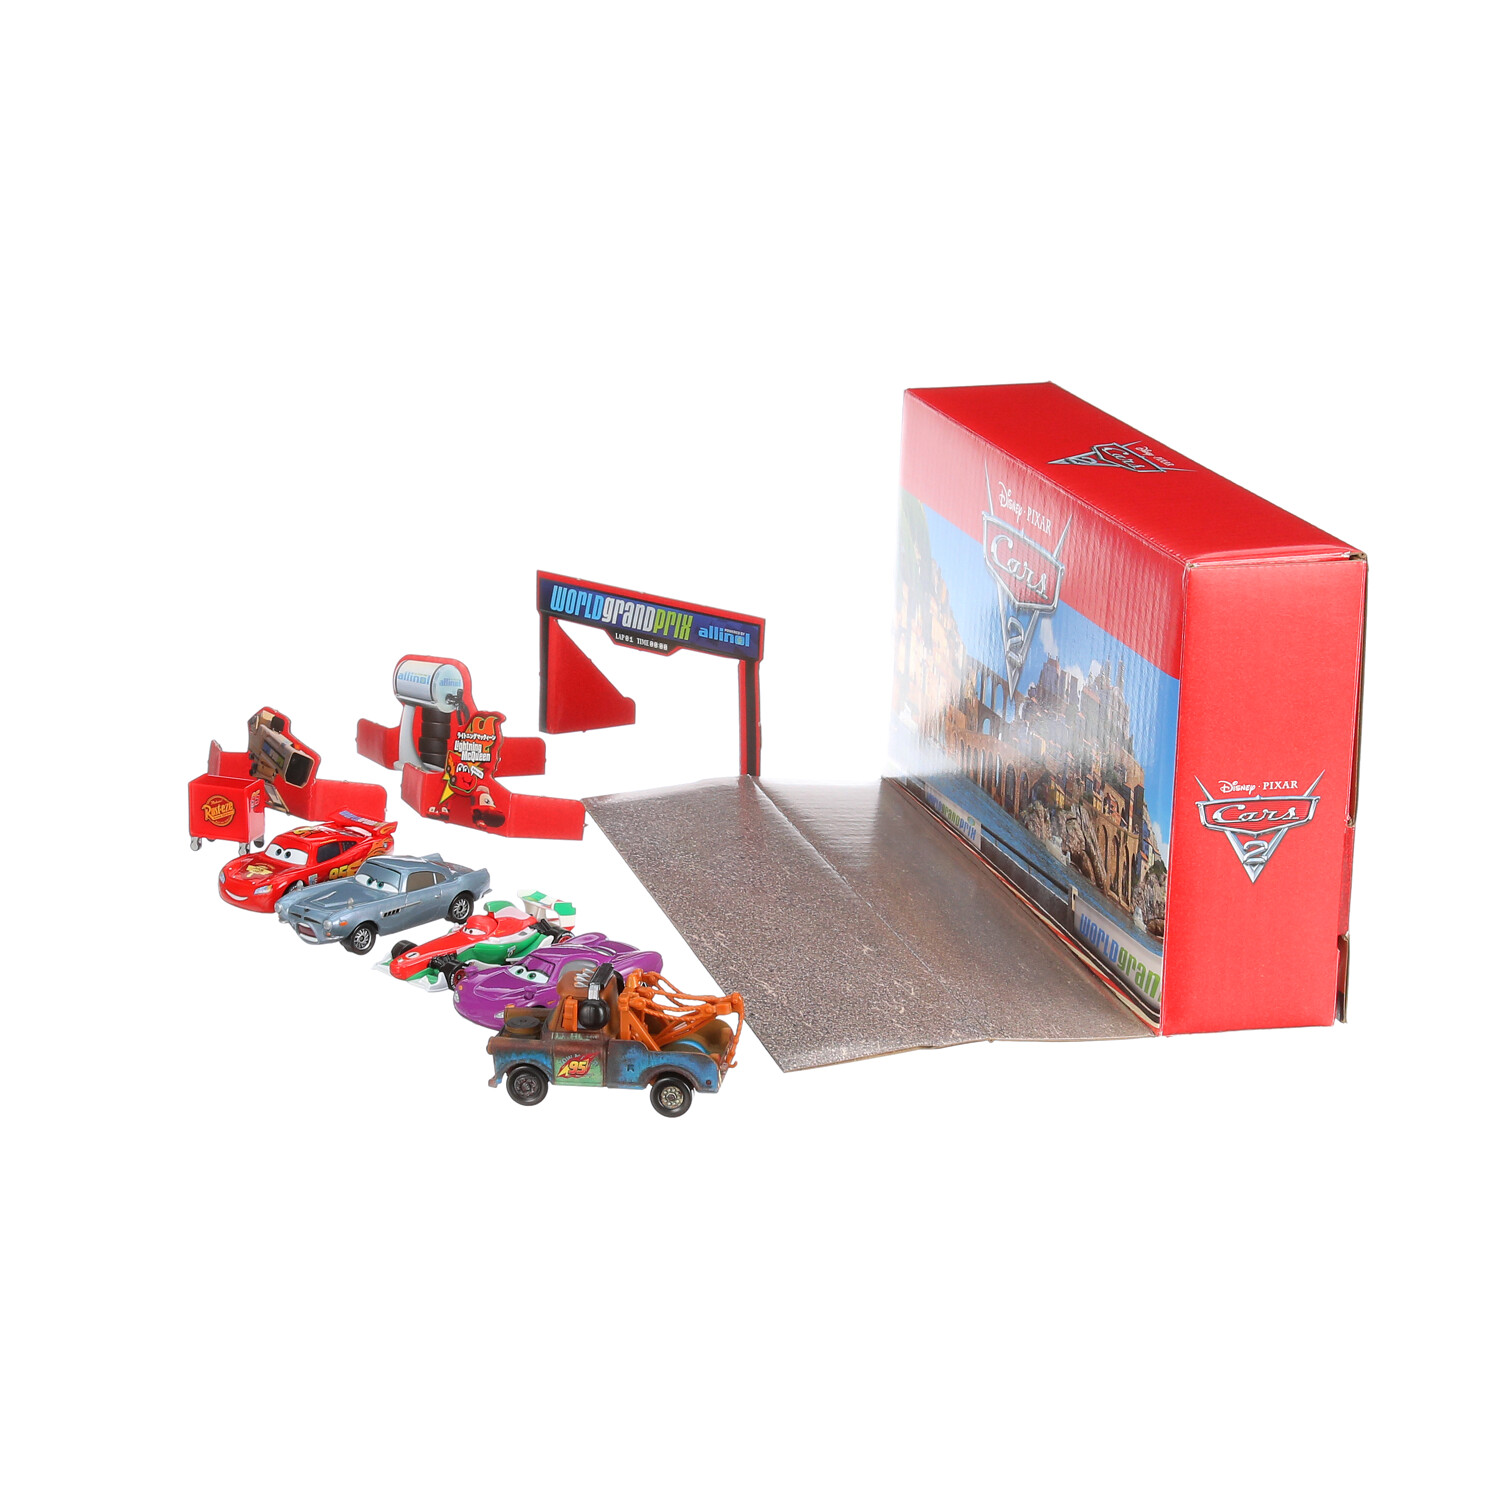 Mattel Disney Pixar Cars 2 Vehículos Colección de 5 vehículos, juego de 5  autos coleccionables de personajes y carrito de herramientas inspirado en  el